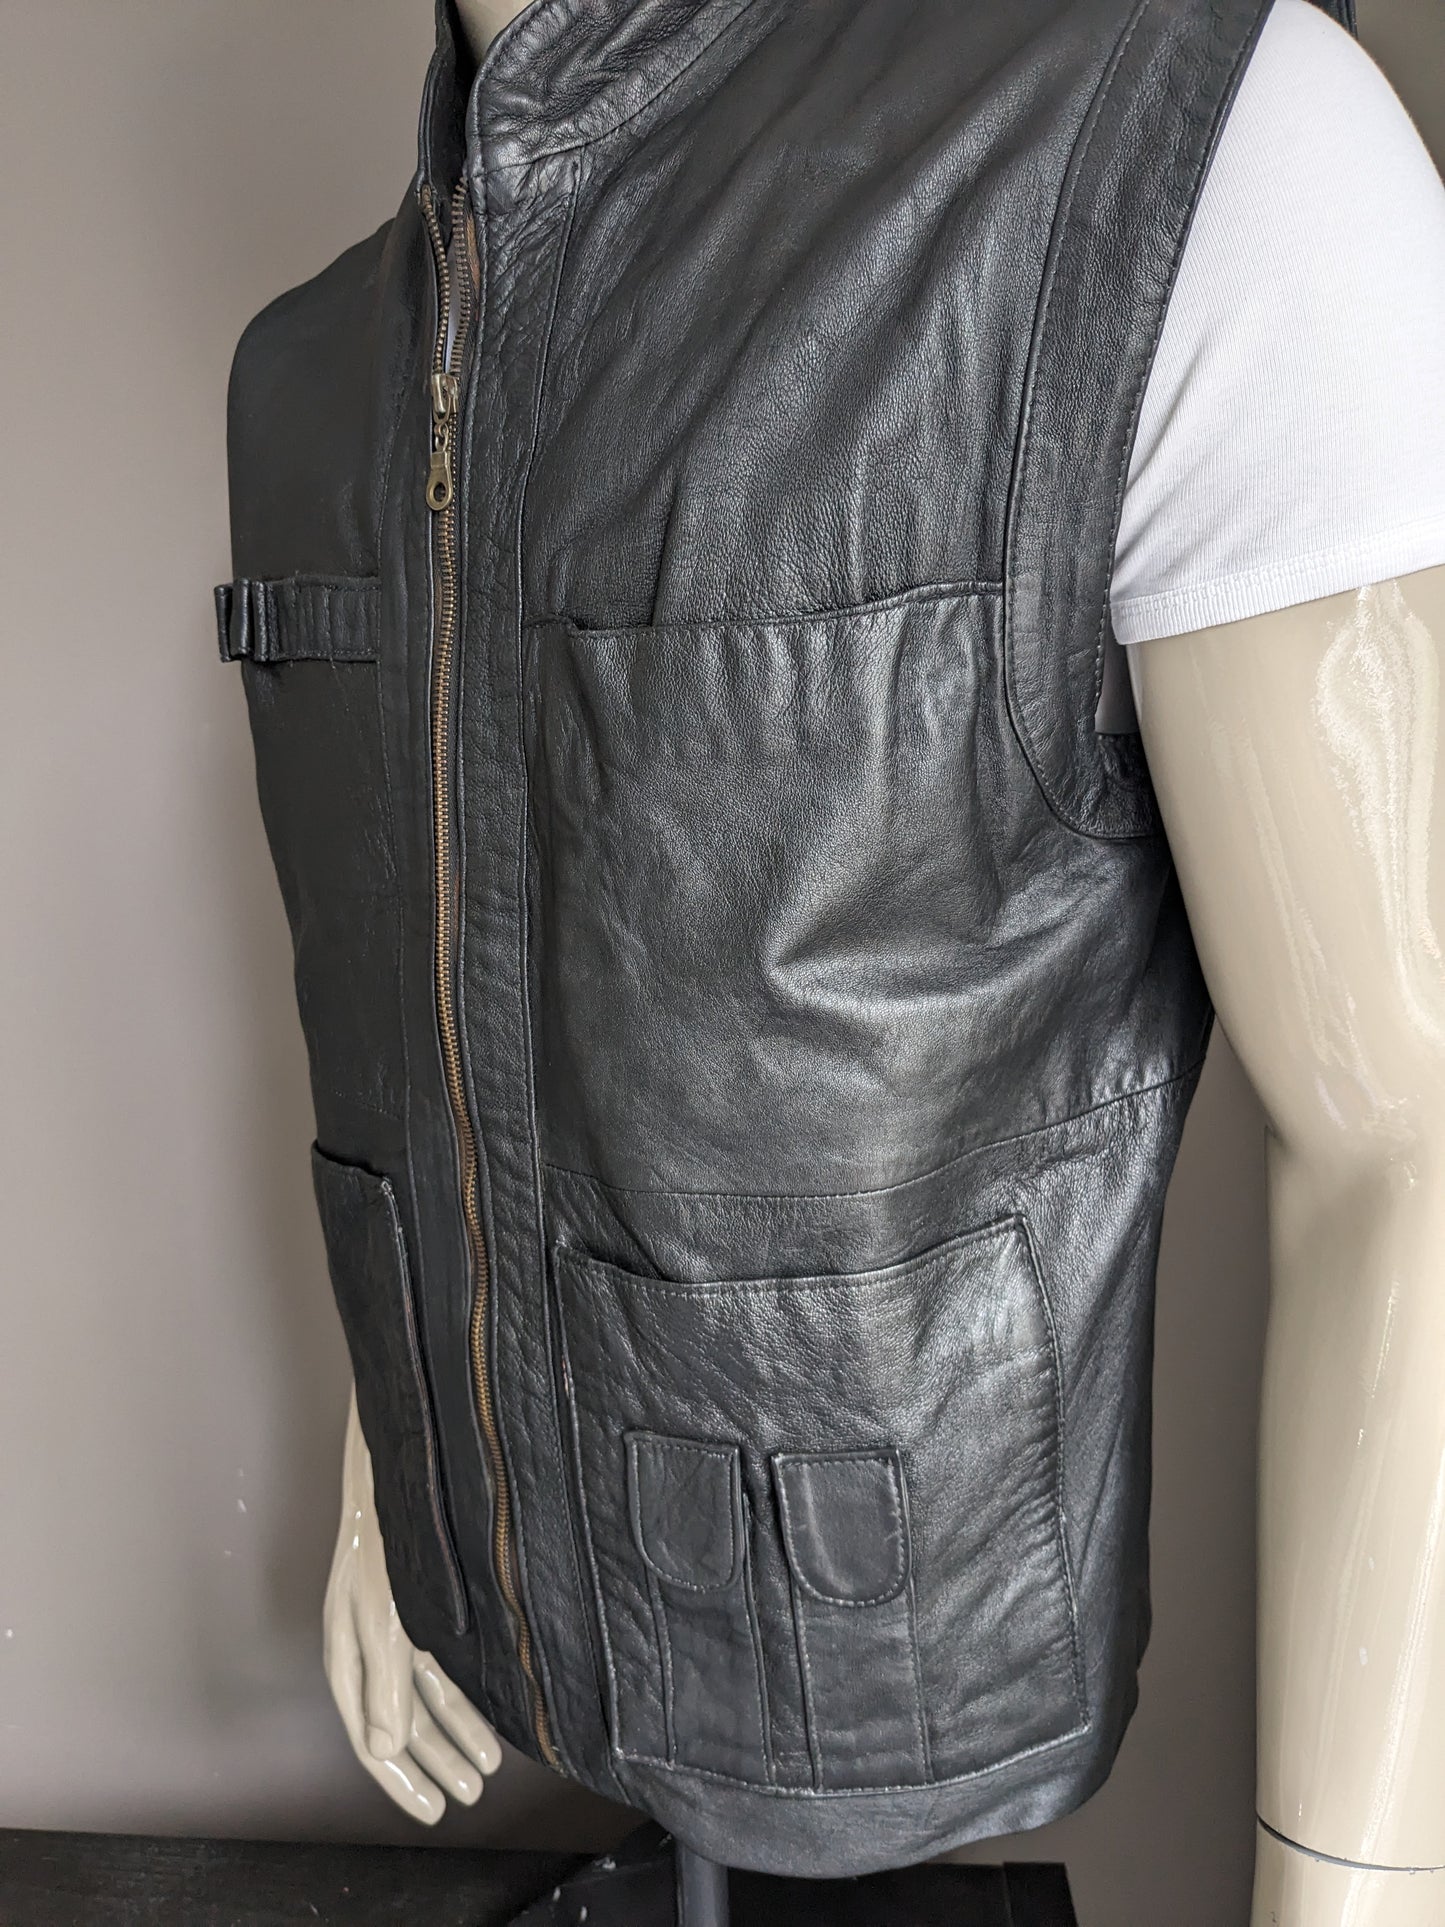 Calzatura del corpo a metà lunghezza in pelle vintage con borse. Colorato nero. Taglia L. 1 tasca interna.